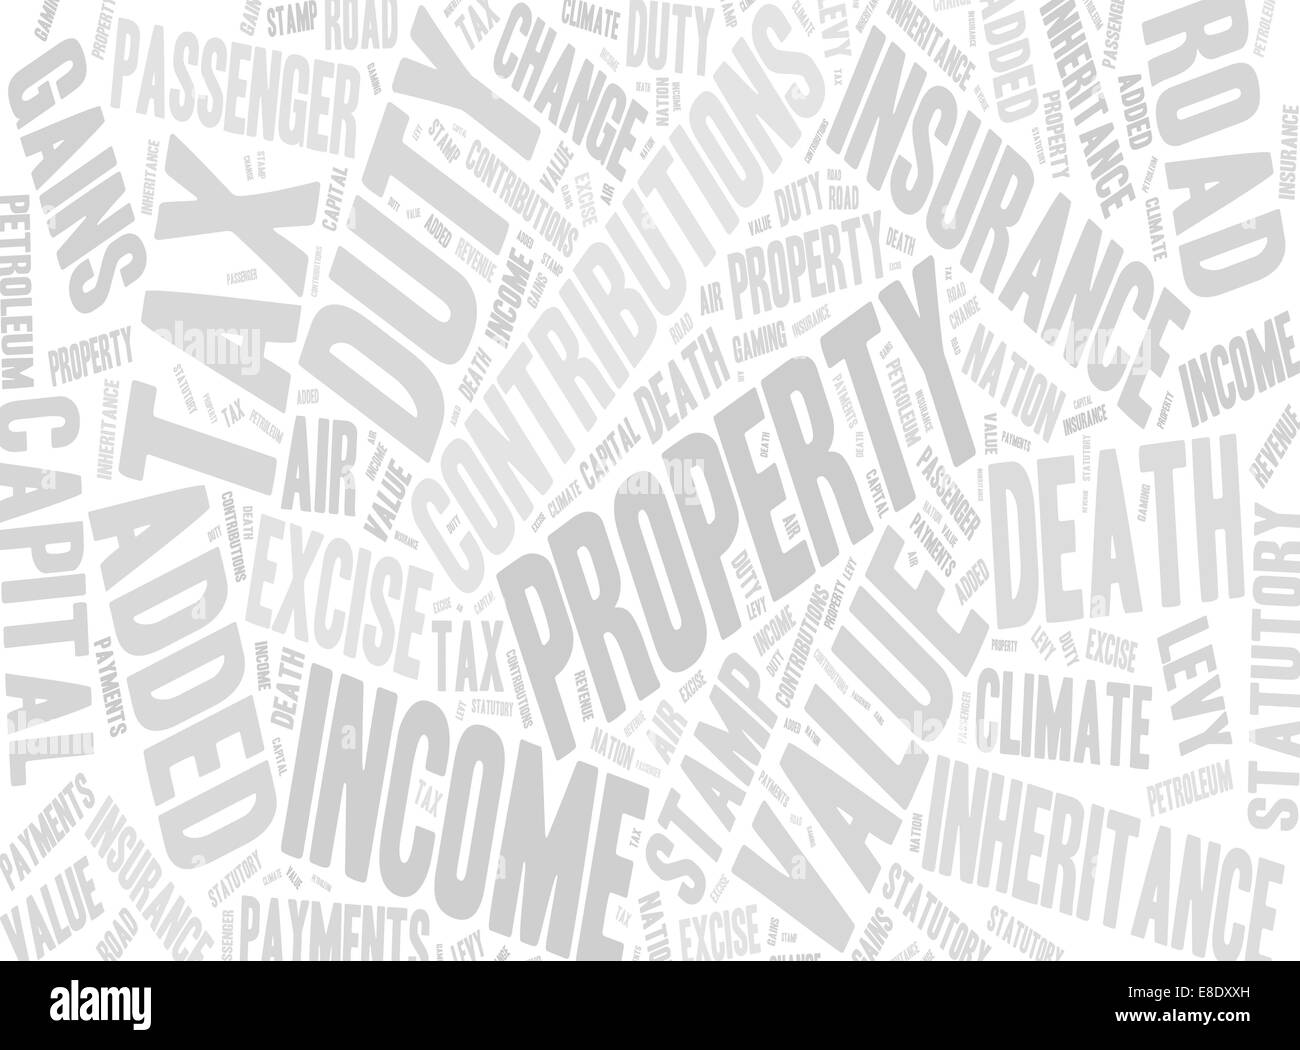 Raccolta di parole con riferimento alle imposte nel Regno Unito. Foto Stock